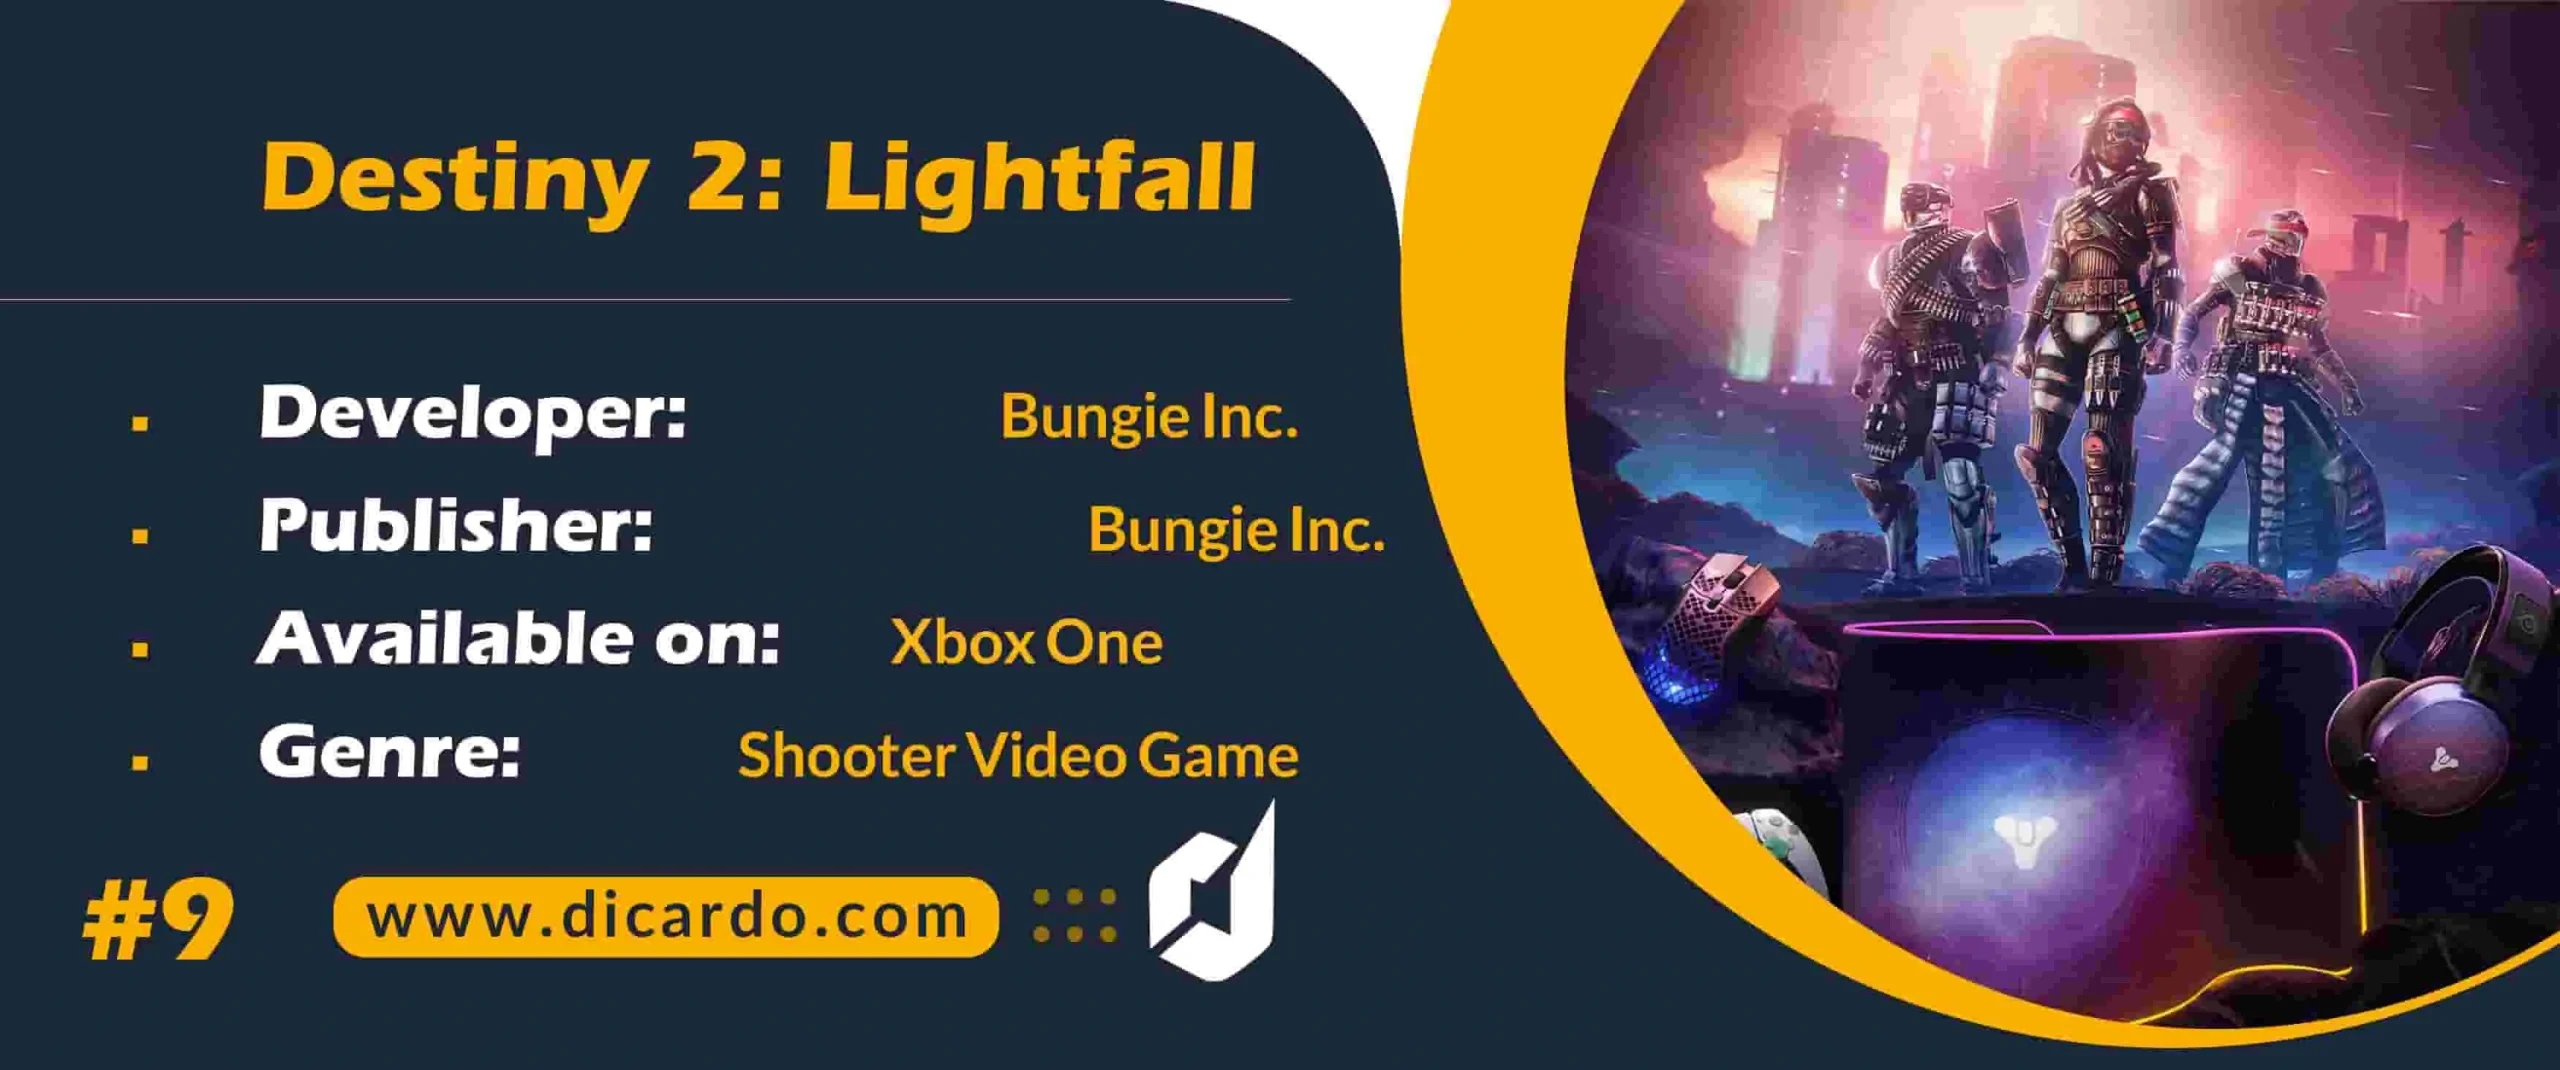 #9 دستینی 2 لایت فال Destiny 2: Lightfall